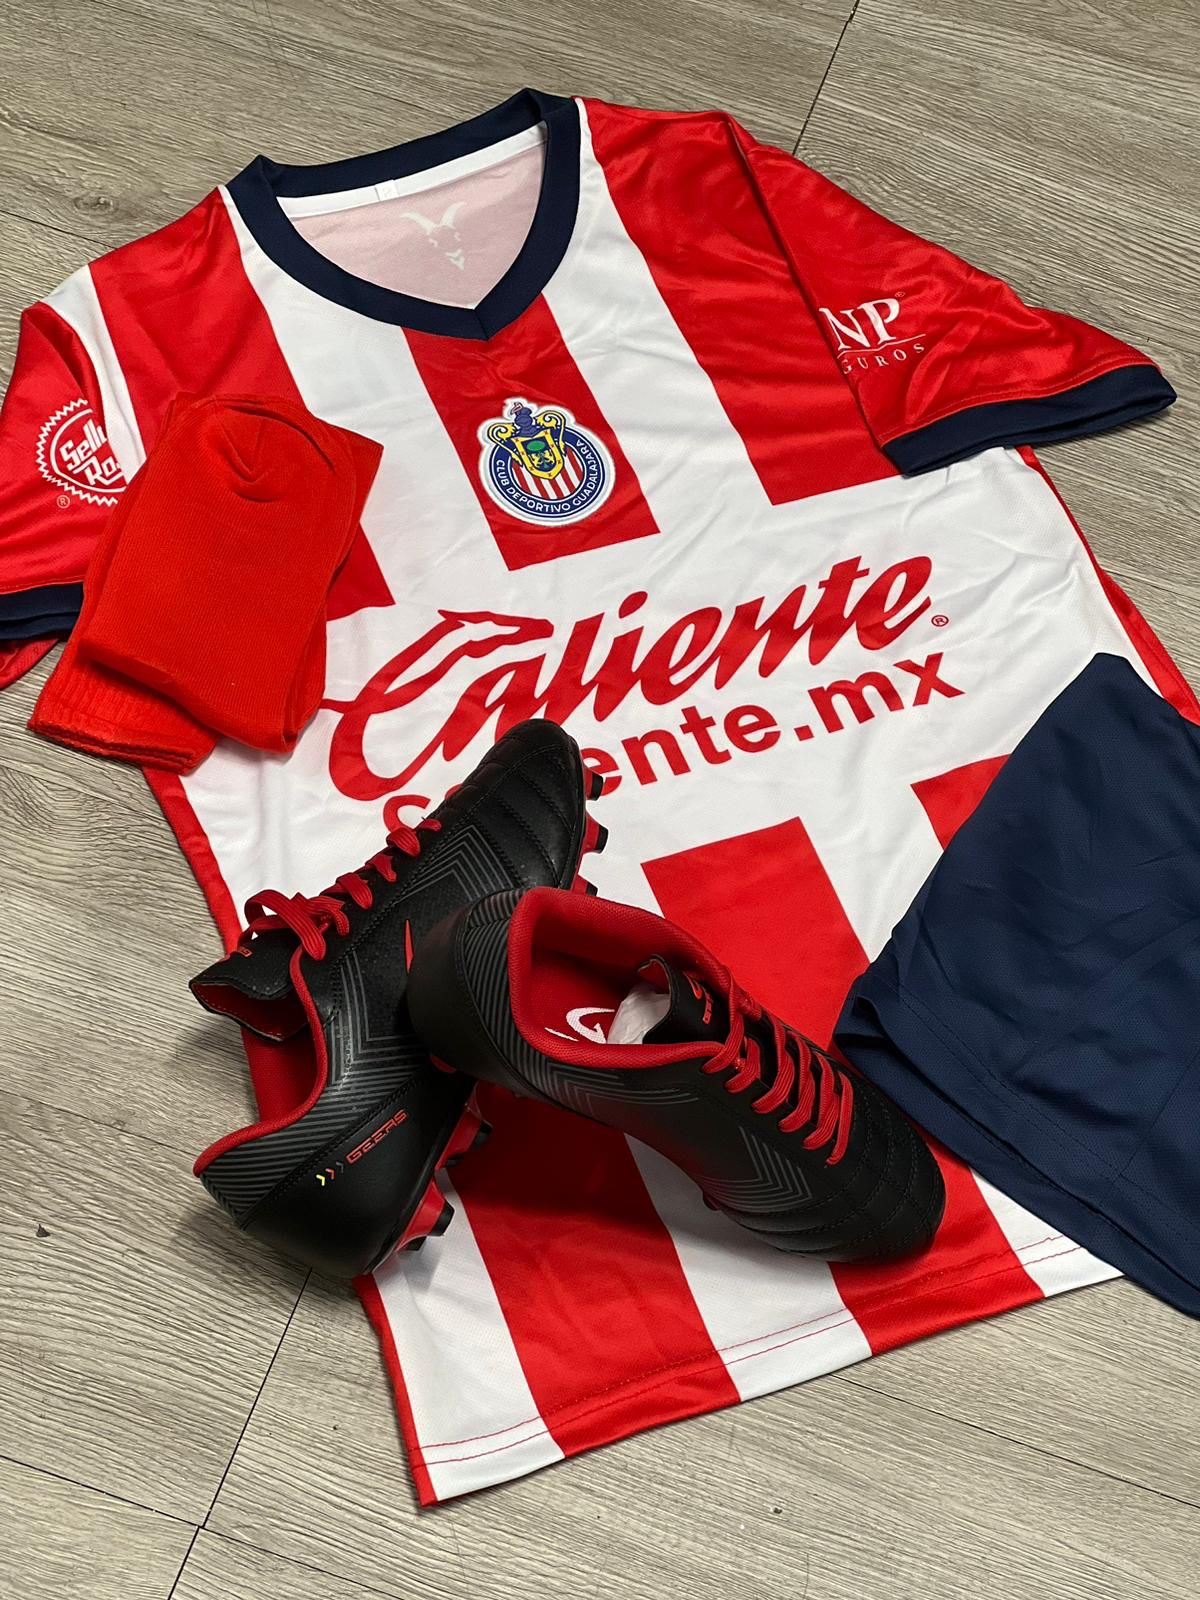 Soccer Uniform Chivas